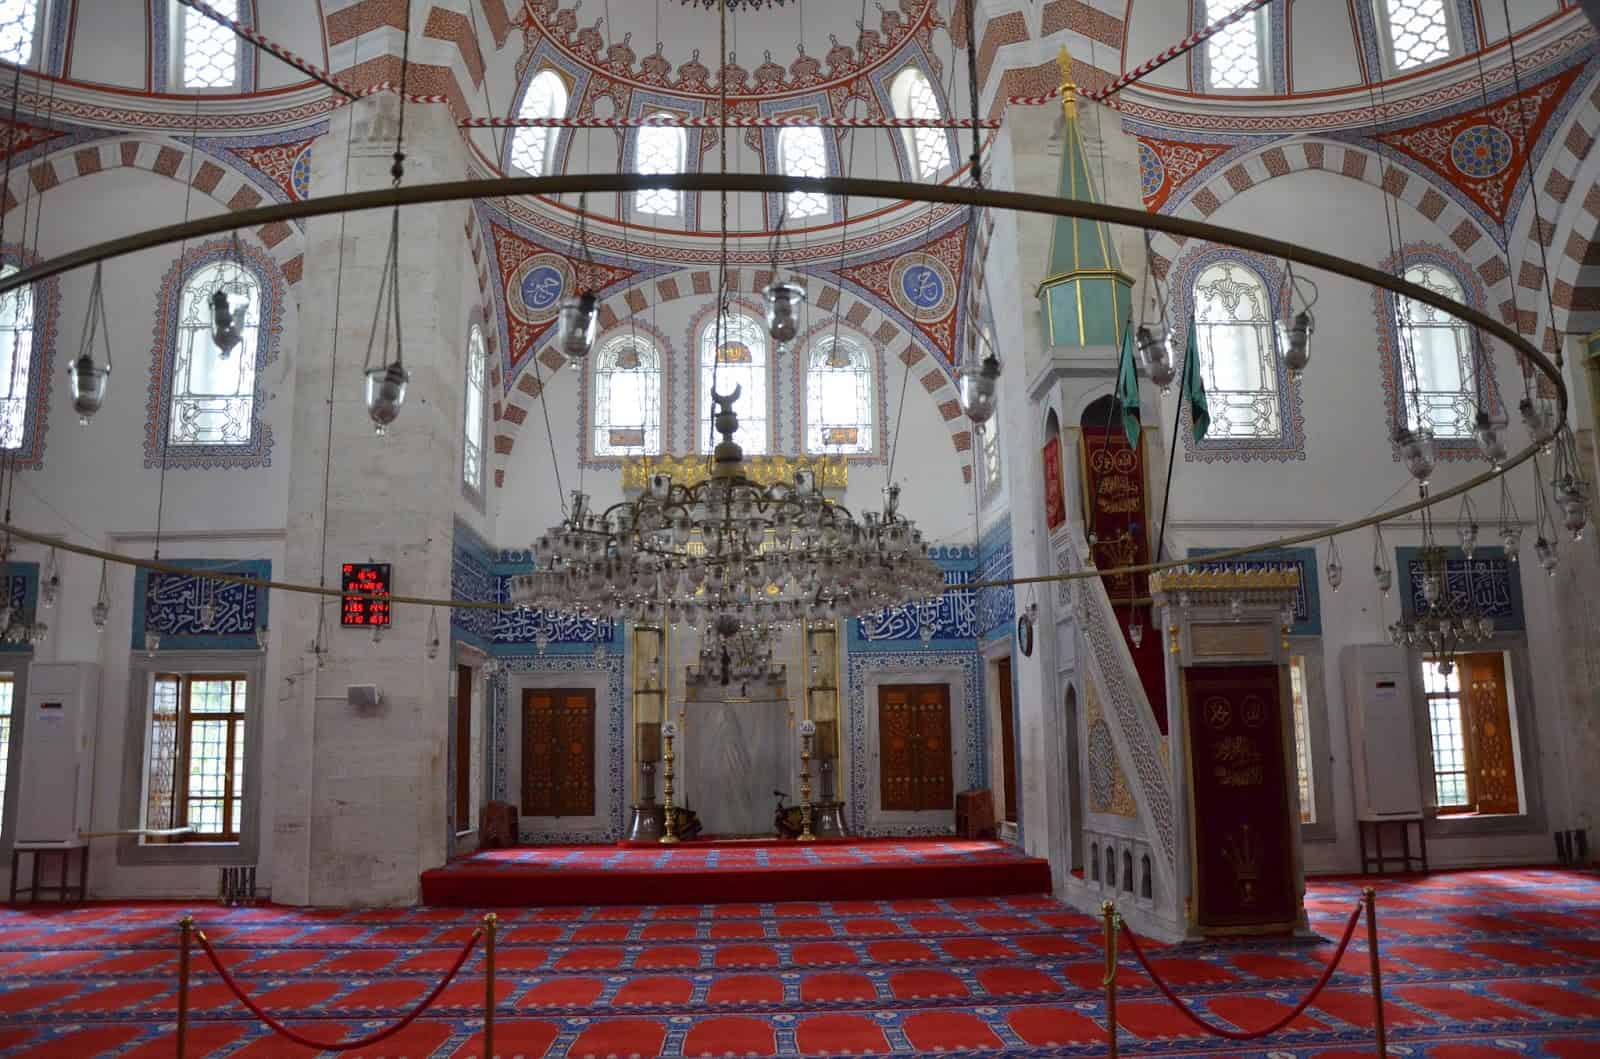 Atik Valide Camii in Üsküdar, Istanbul, Turkey